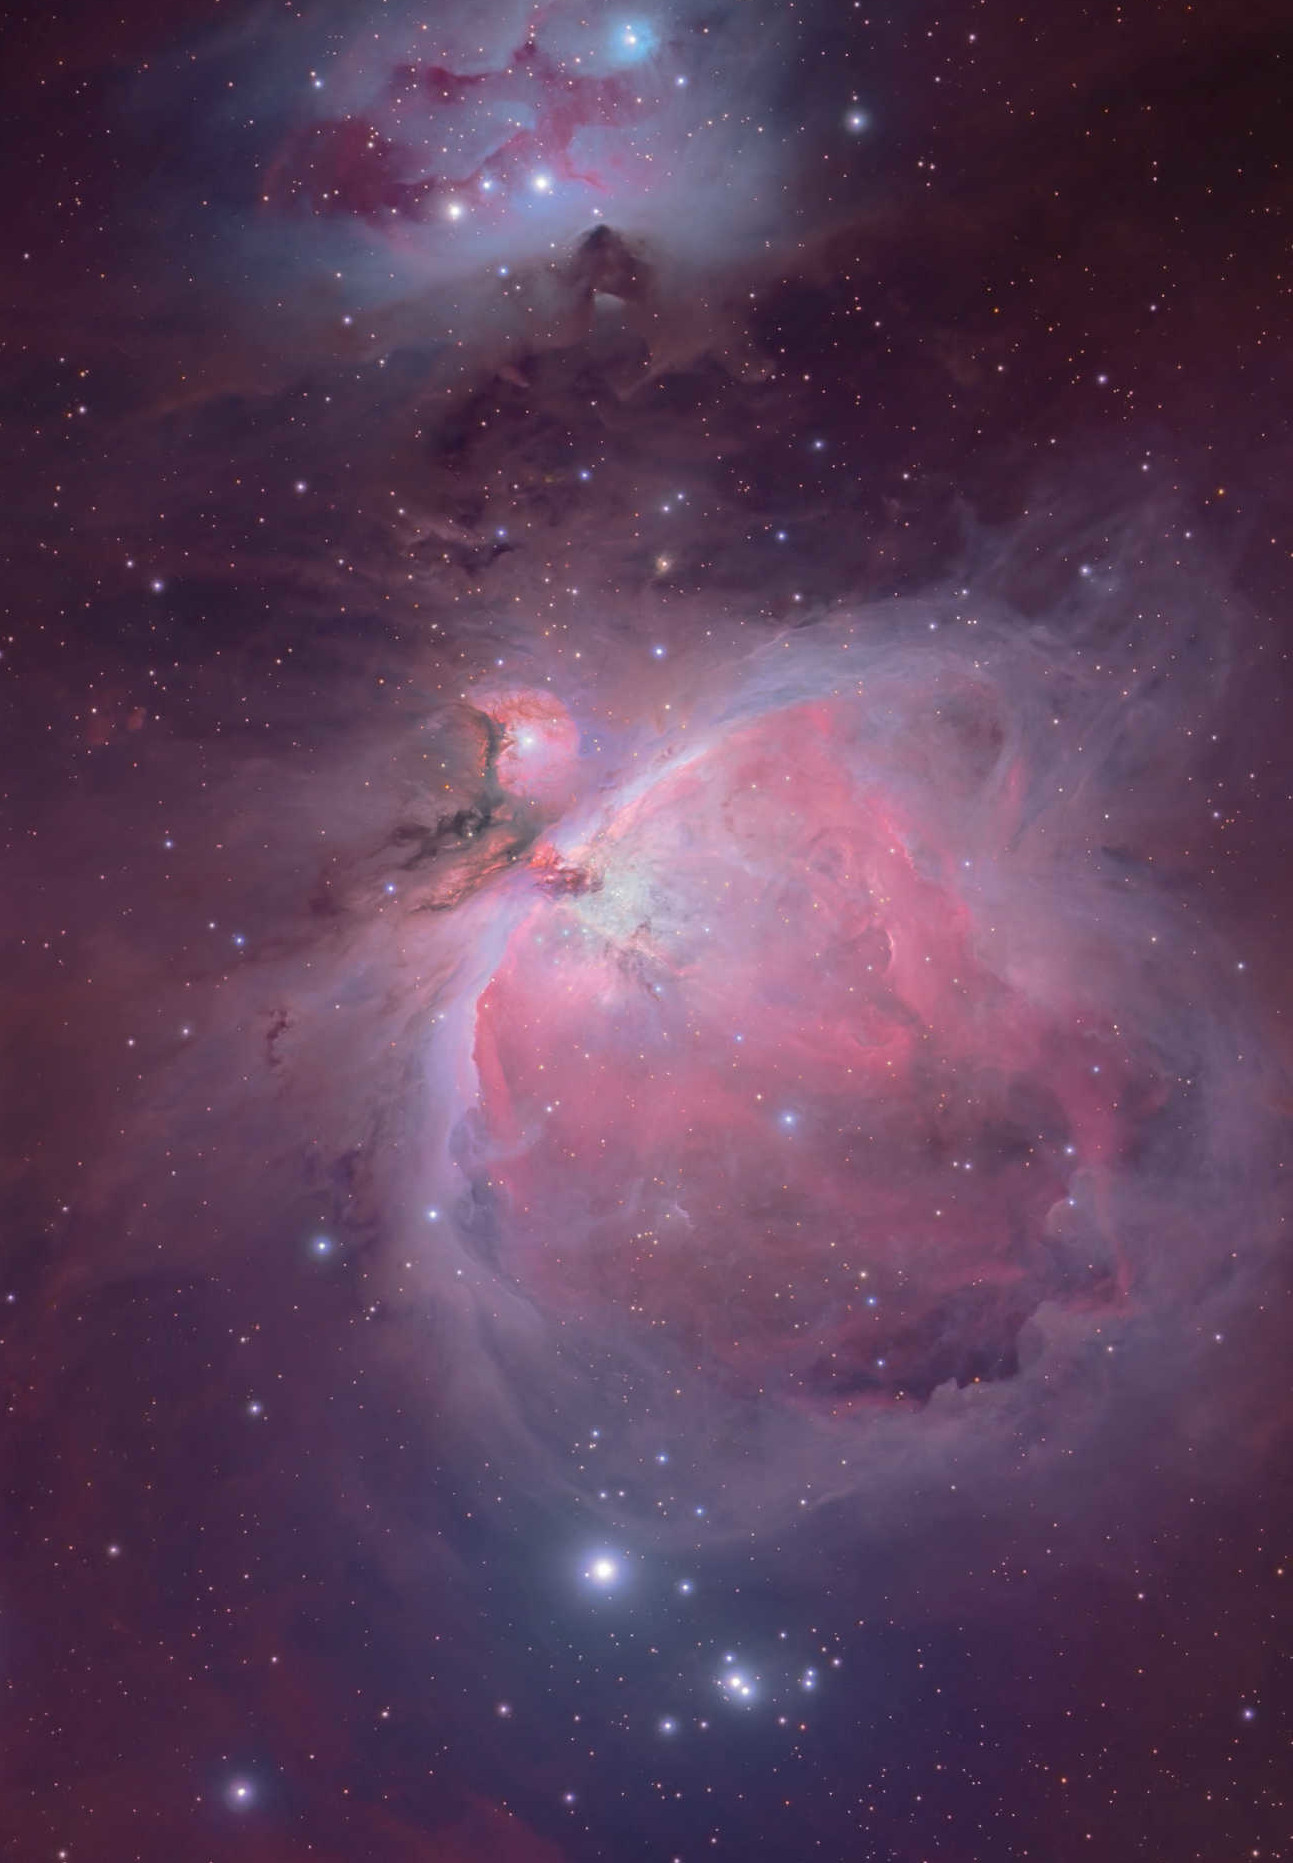 Os fantásticos mundos da Nebulosa de Oríon inspiram muitos astrónomos amadores. Mario Weigand